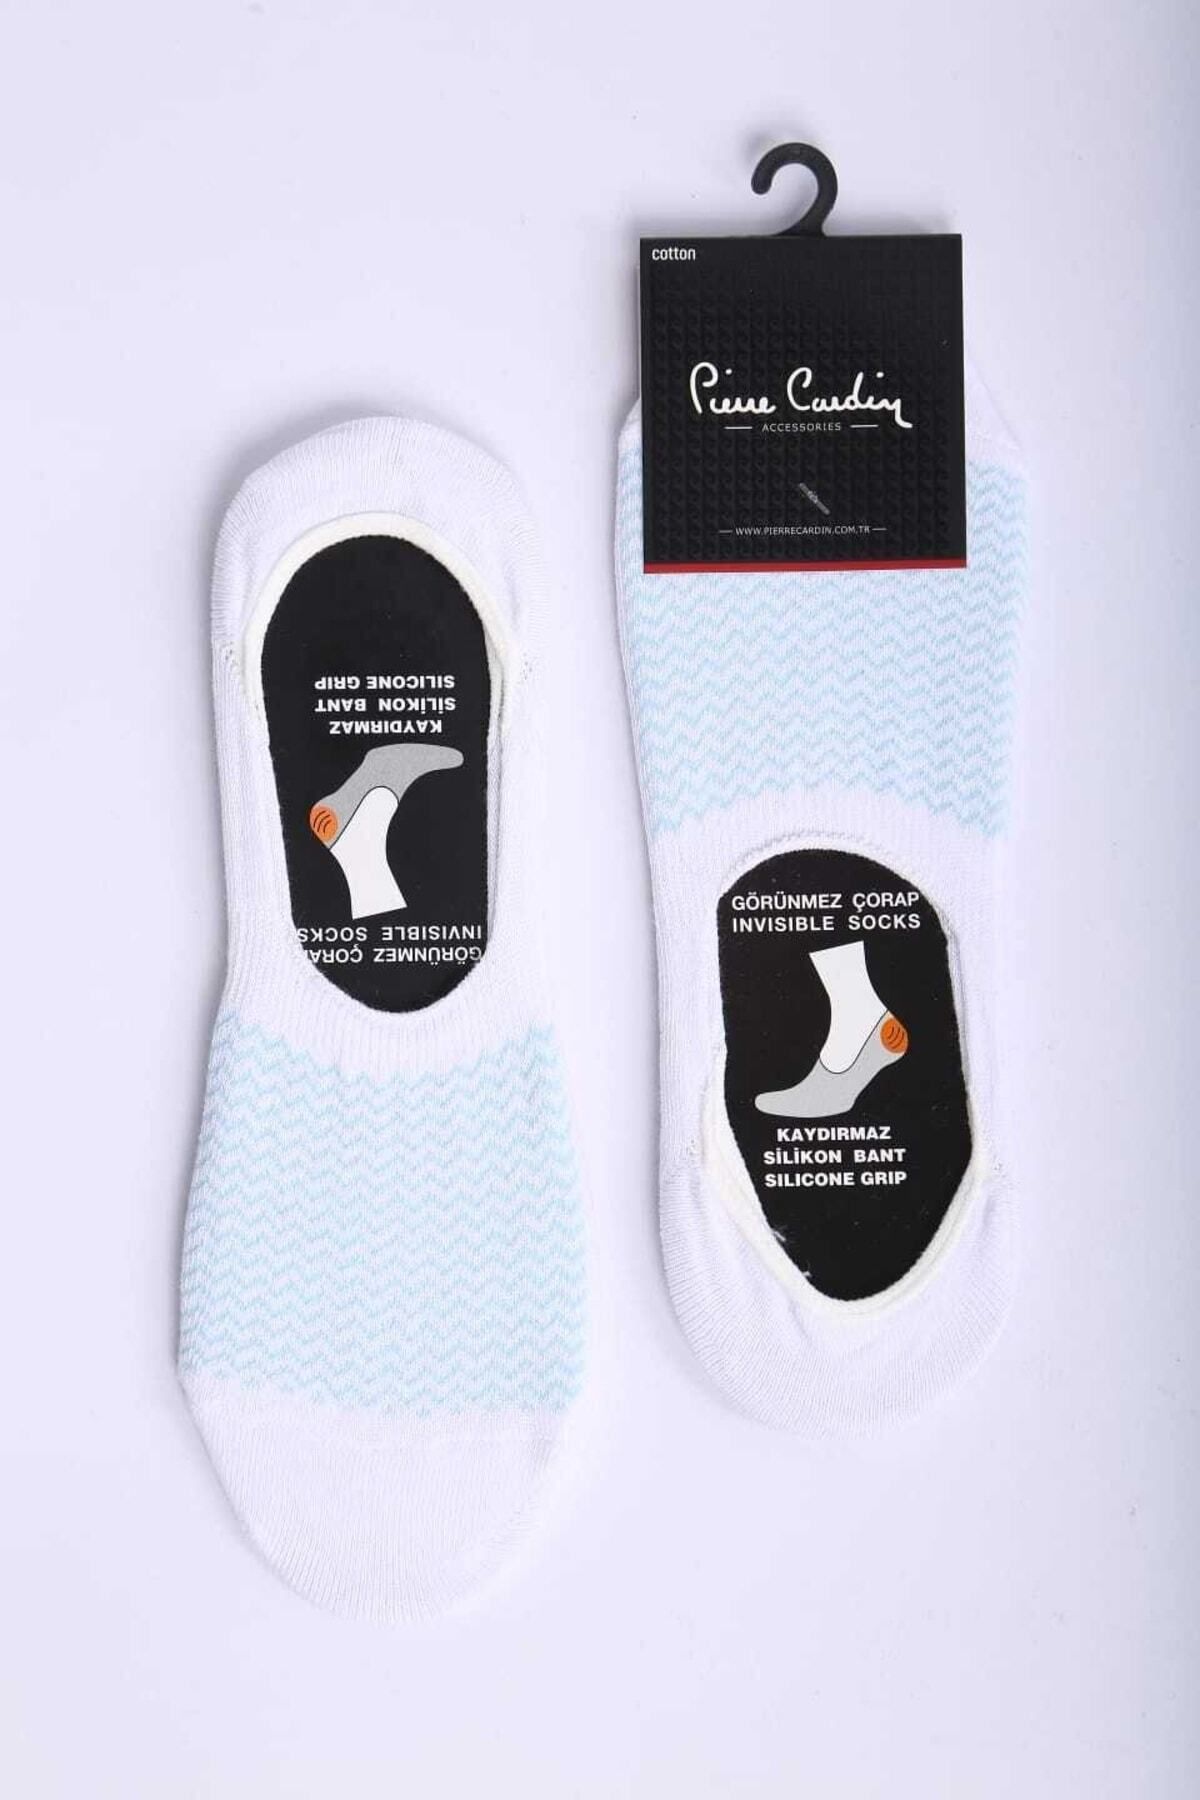 Pierre Cardin Piere Cardin Pamuk 6'lı Beyaz Kaymaz Slikon Bantlı Uisex Babet Çorap Pc-403